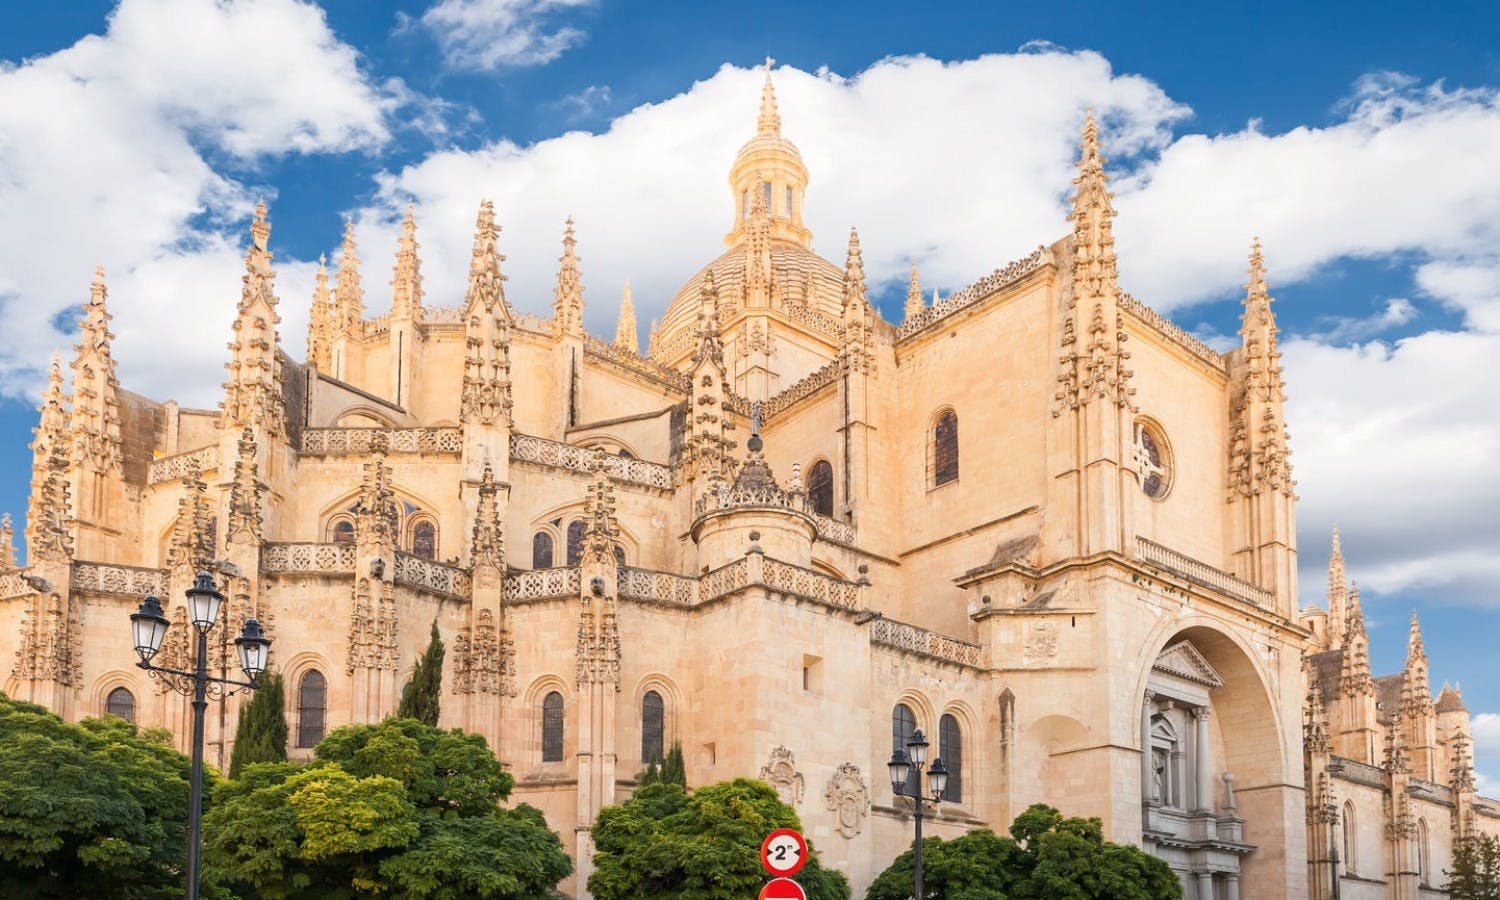 Excursión guiada a Toledo y Segovia desde Madrid